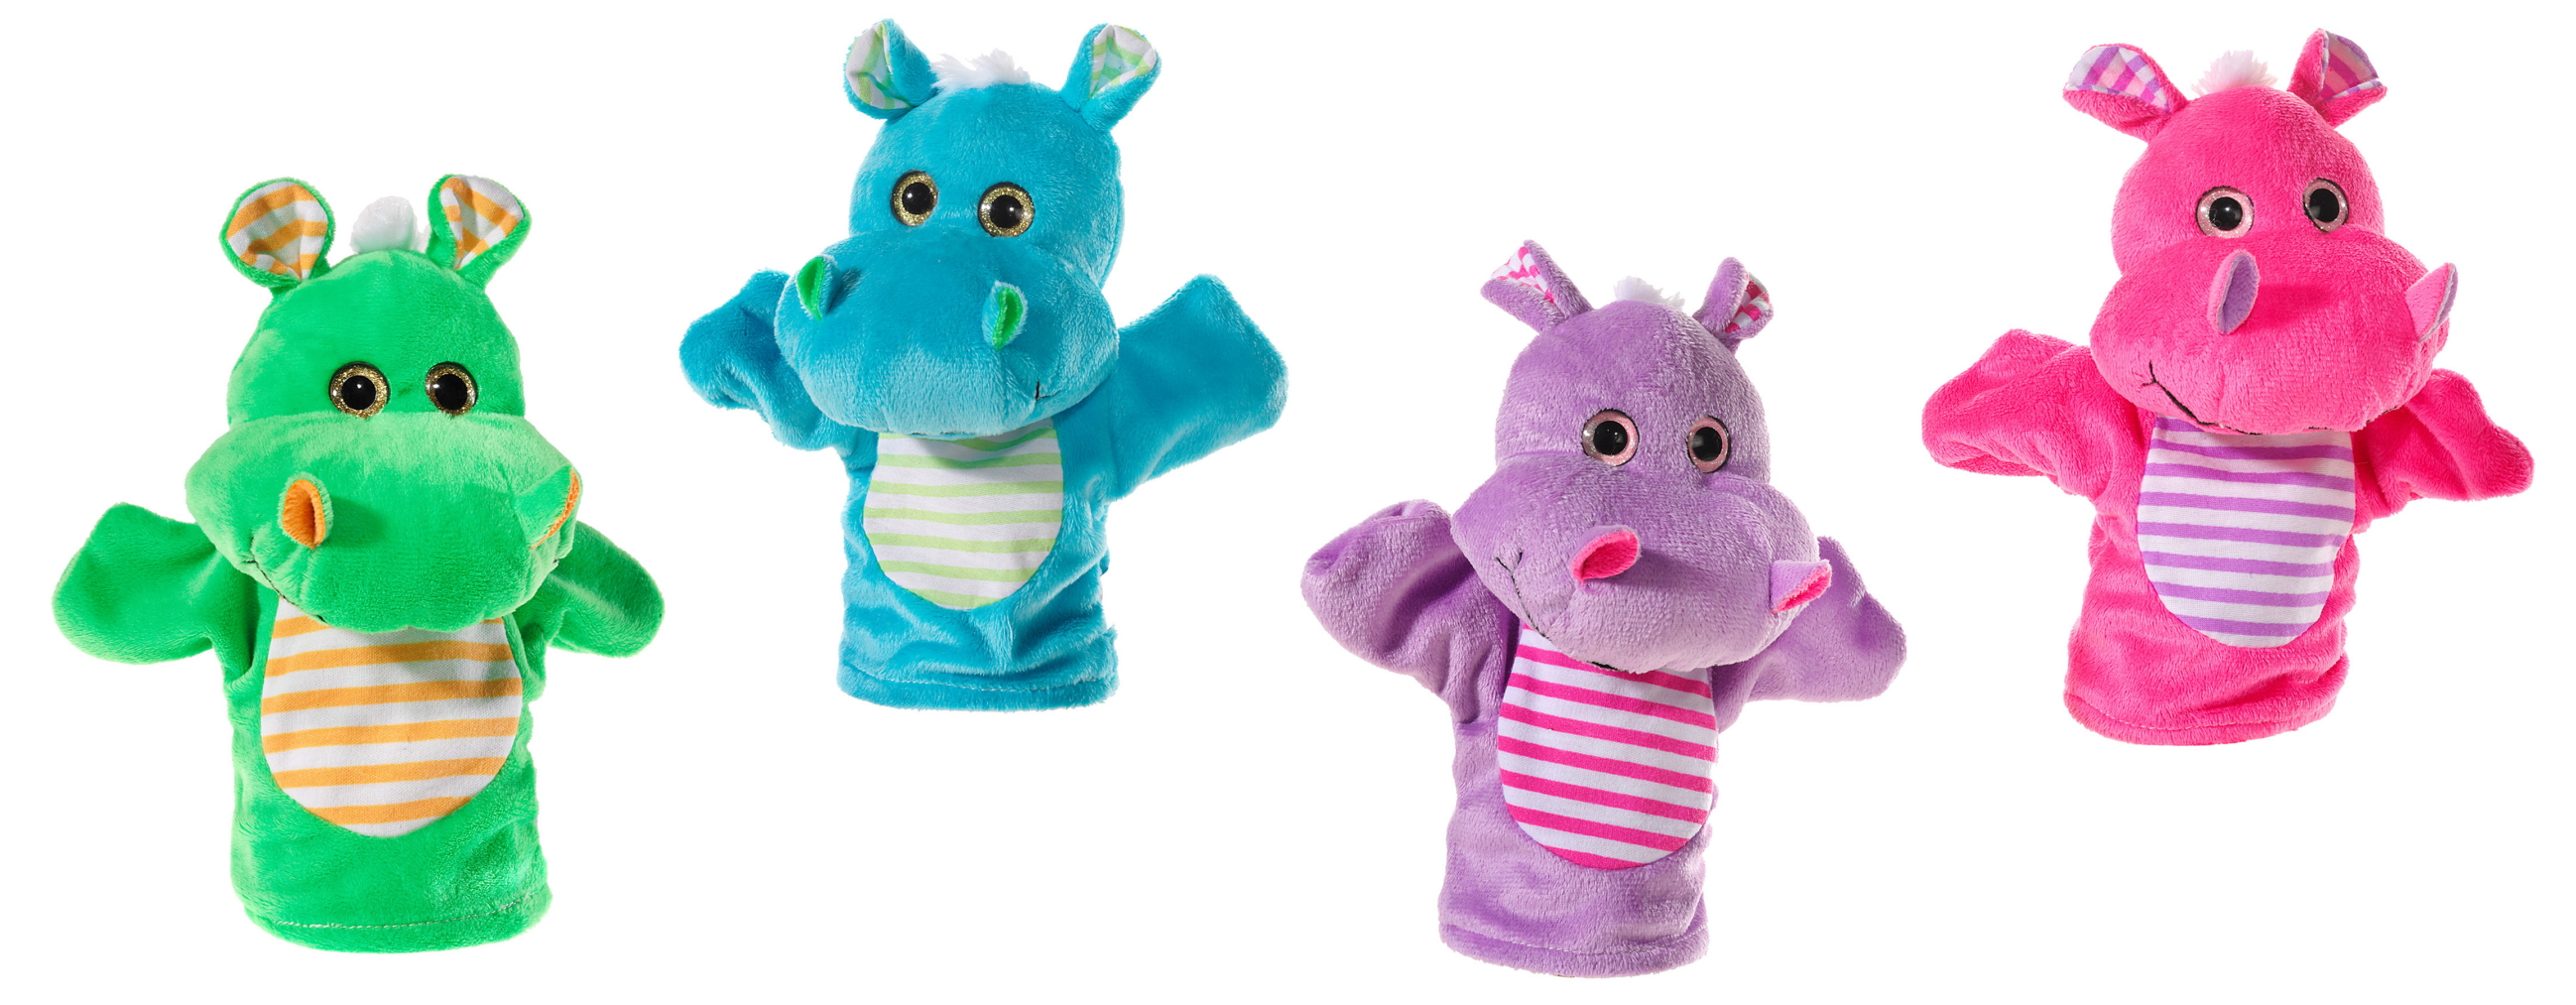 Heunec Handspielpuppe Hippo in lila, pink, blau und grün - in der 20cm Ausführung